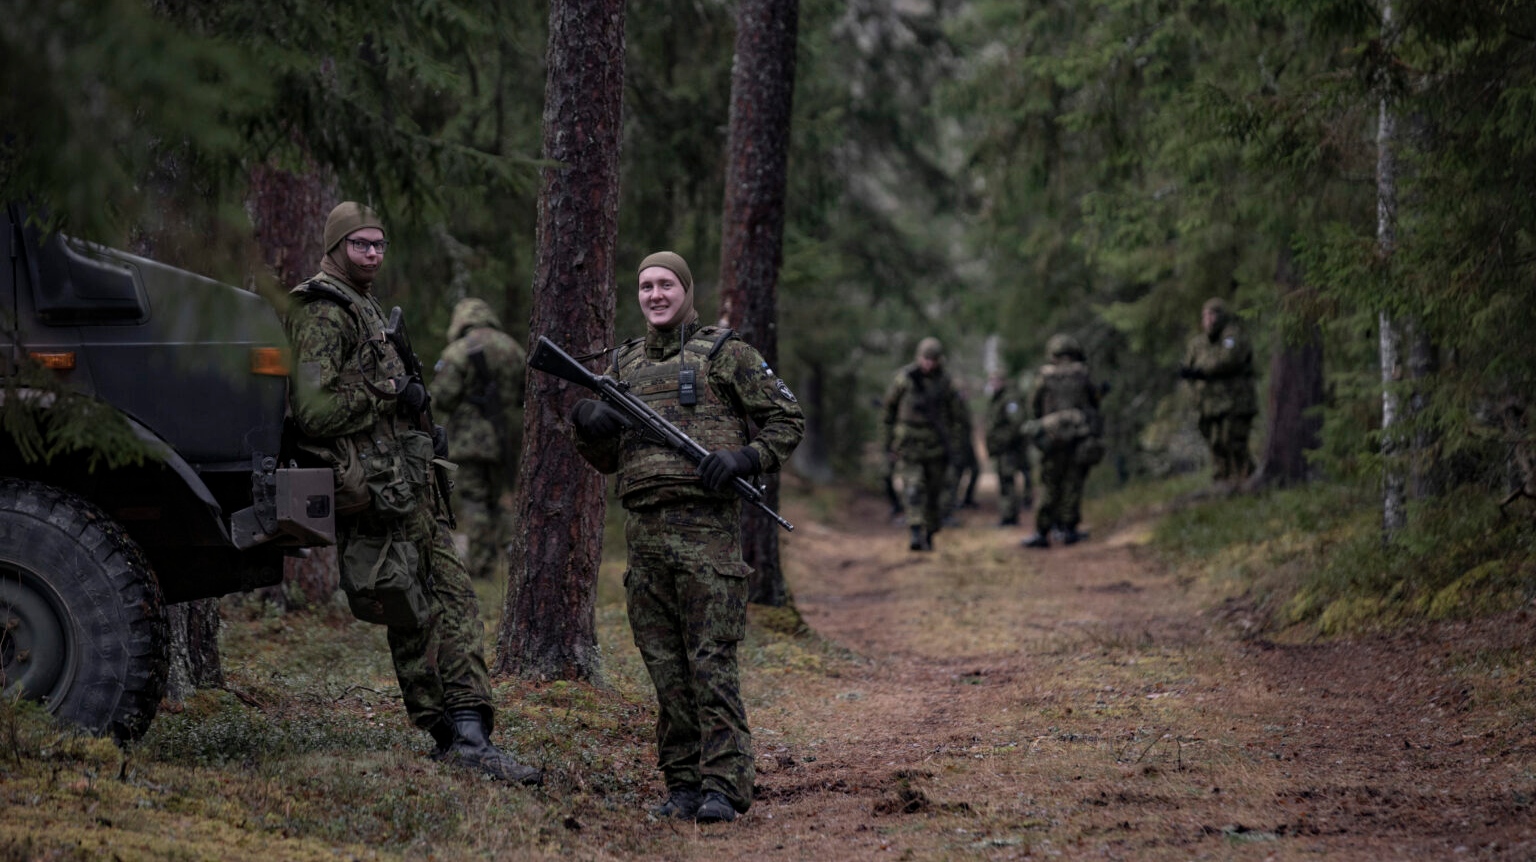 Армия Эстонии